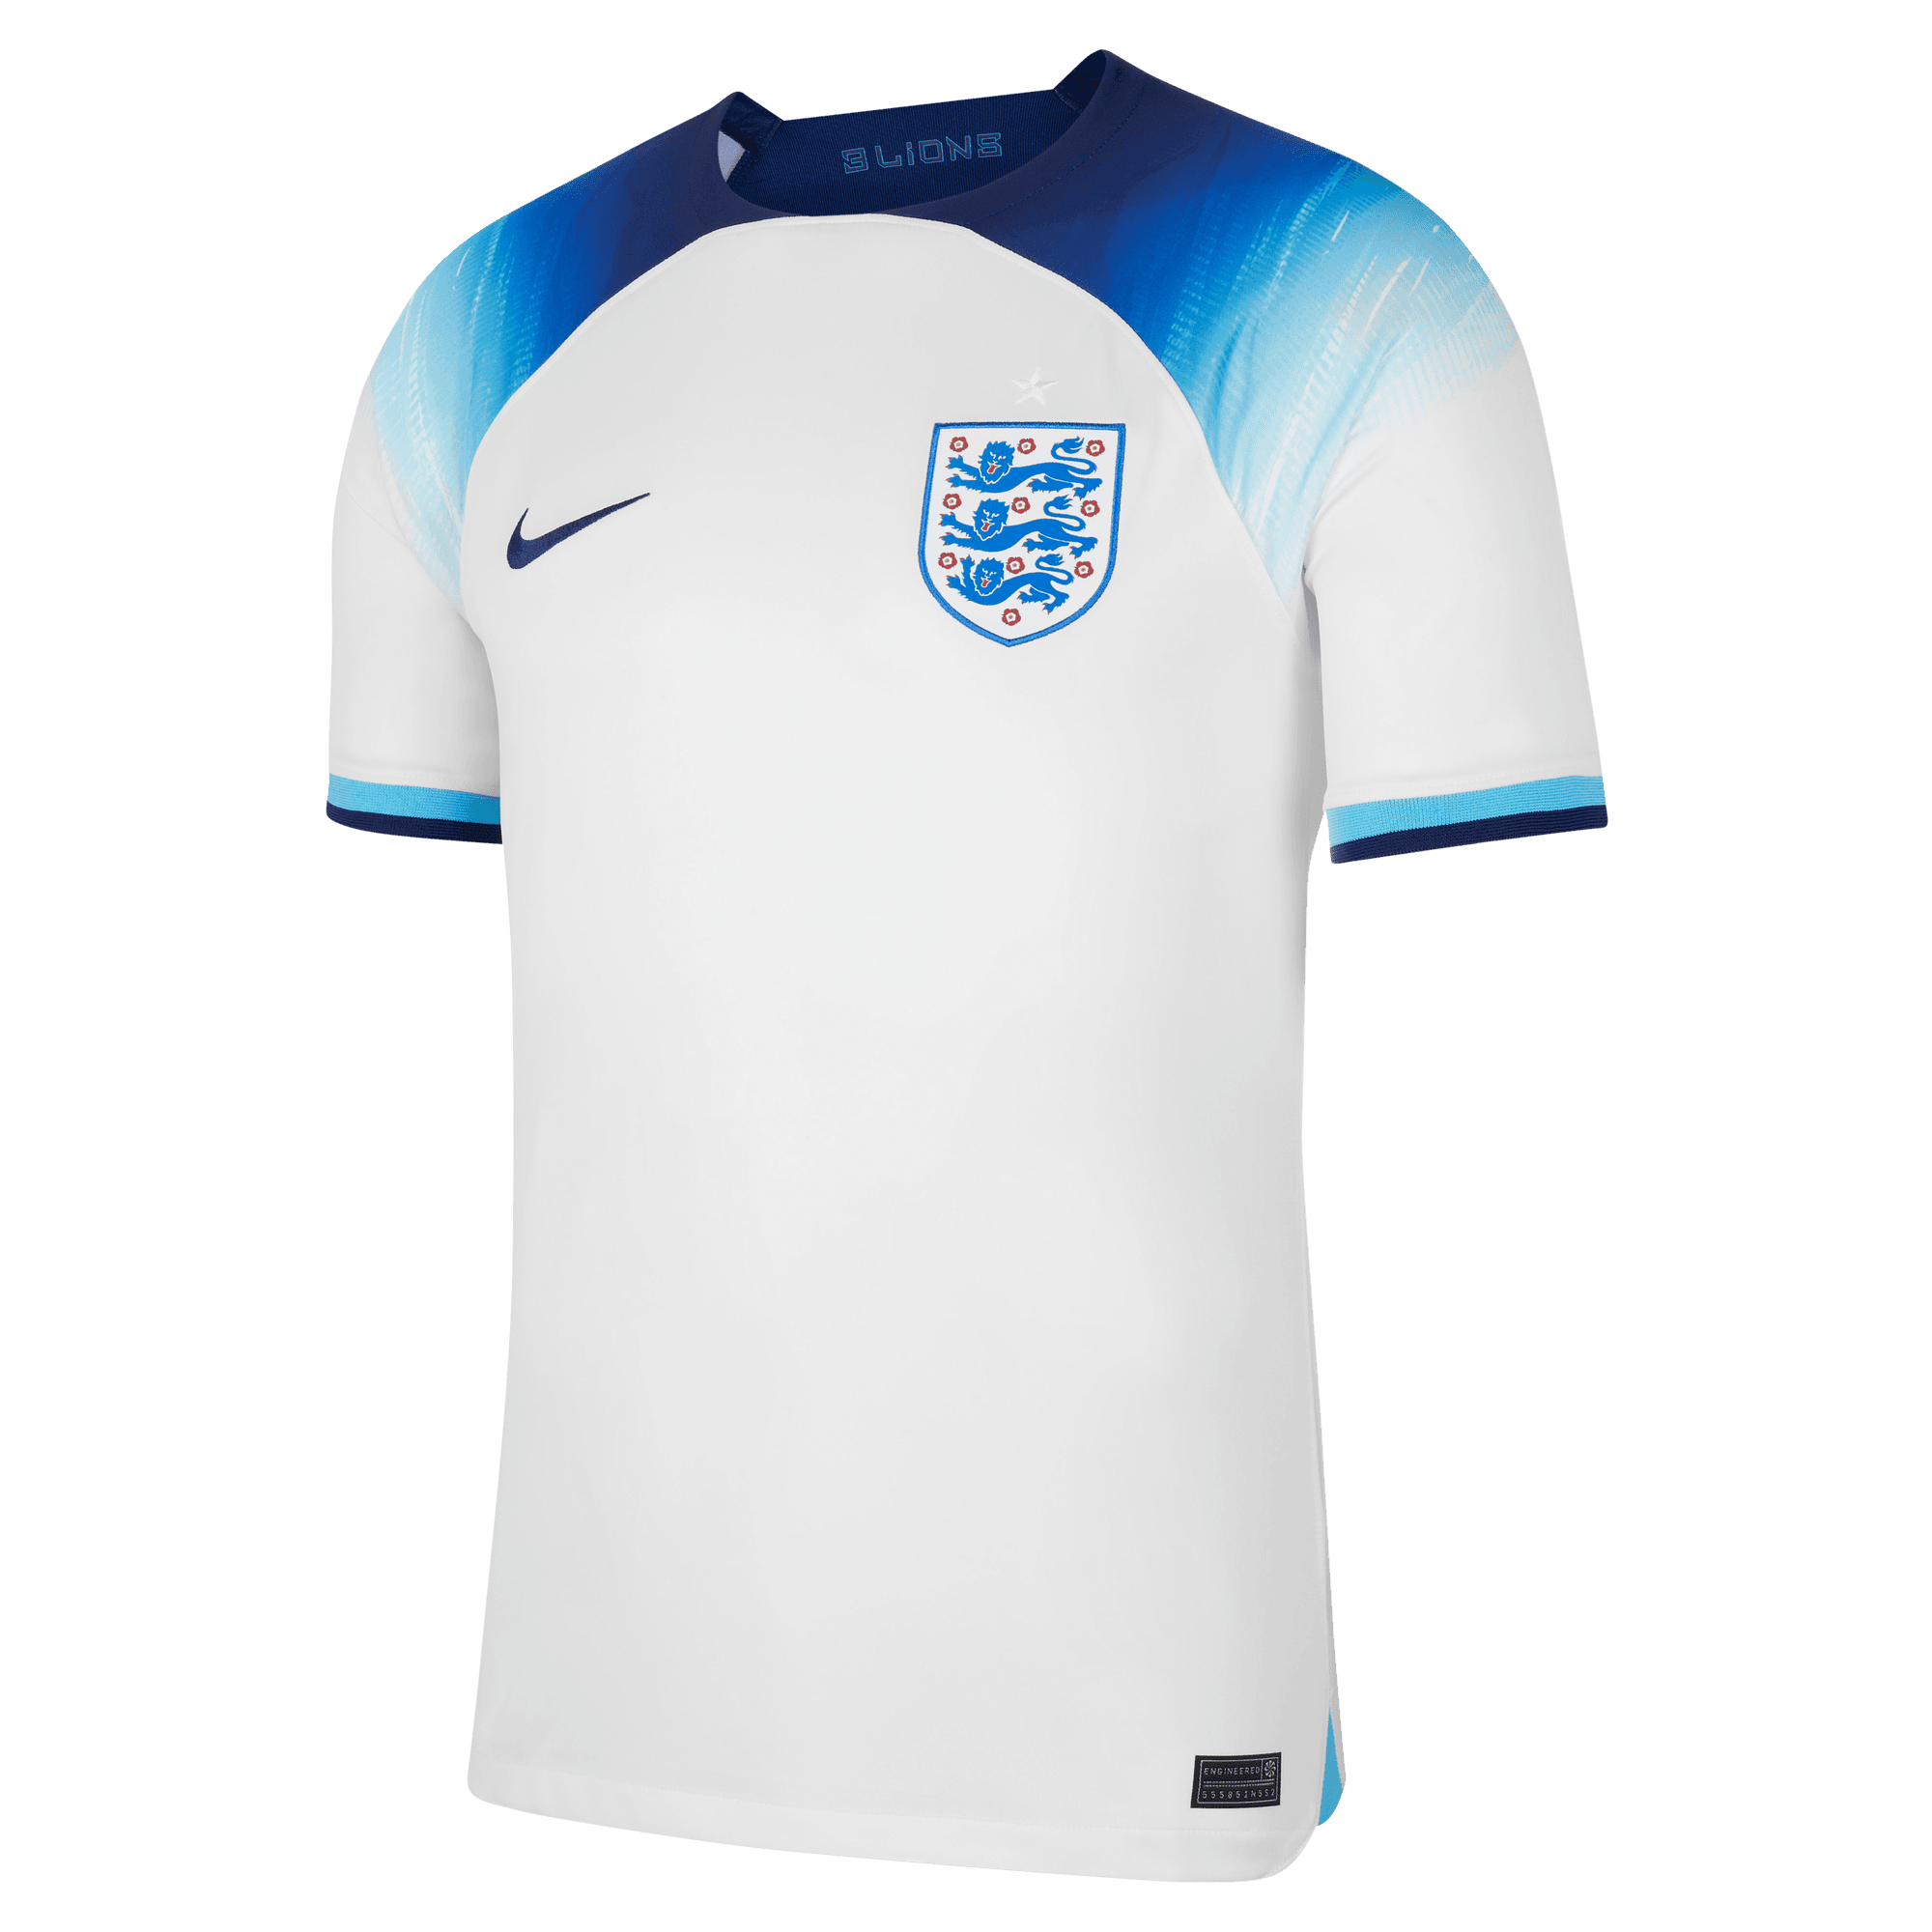 Nike Maillot De Match Home England Soccer   22/23